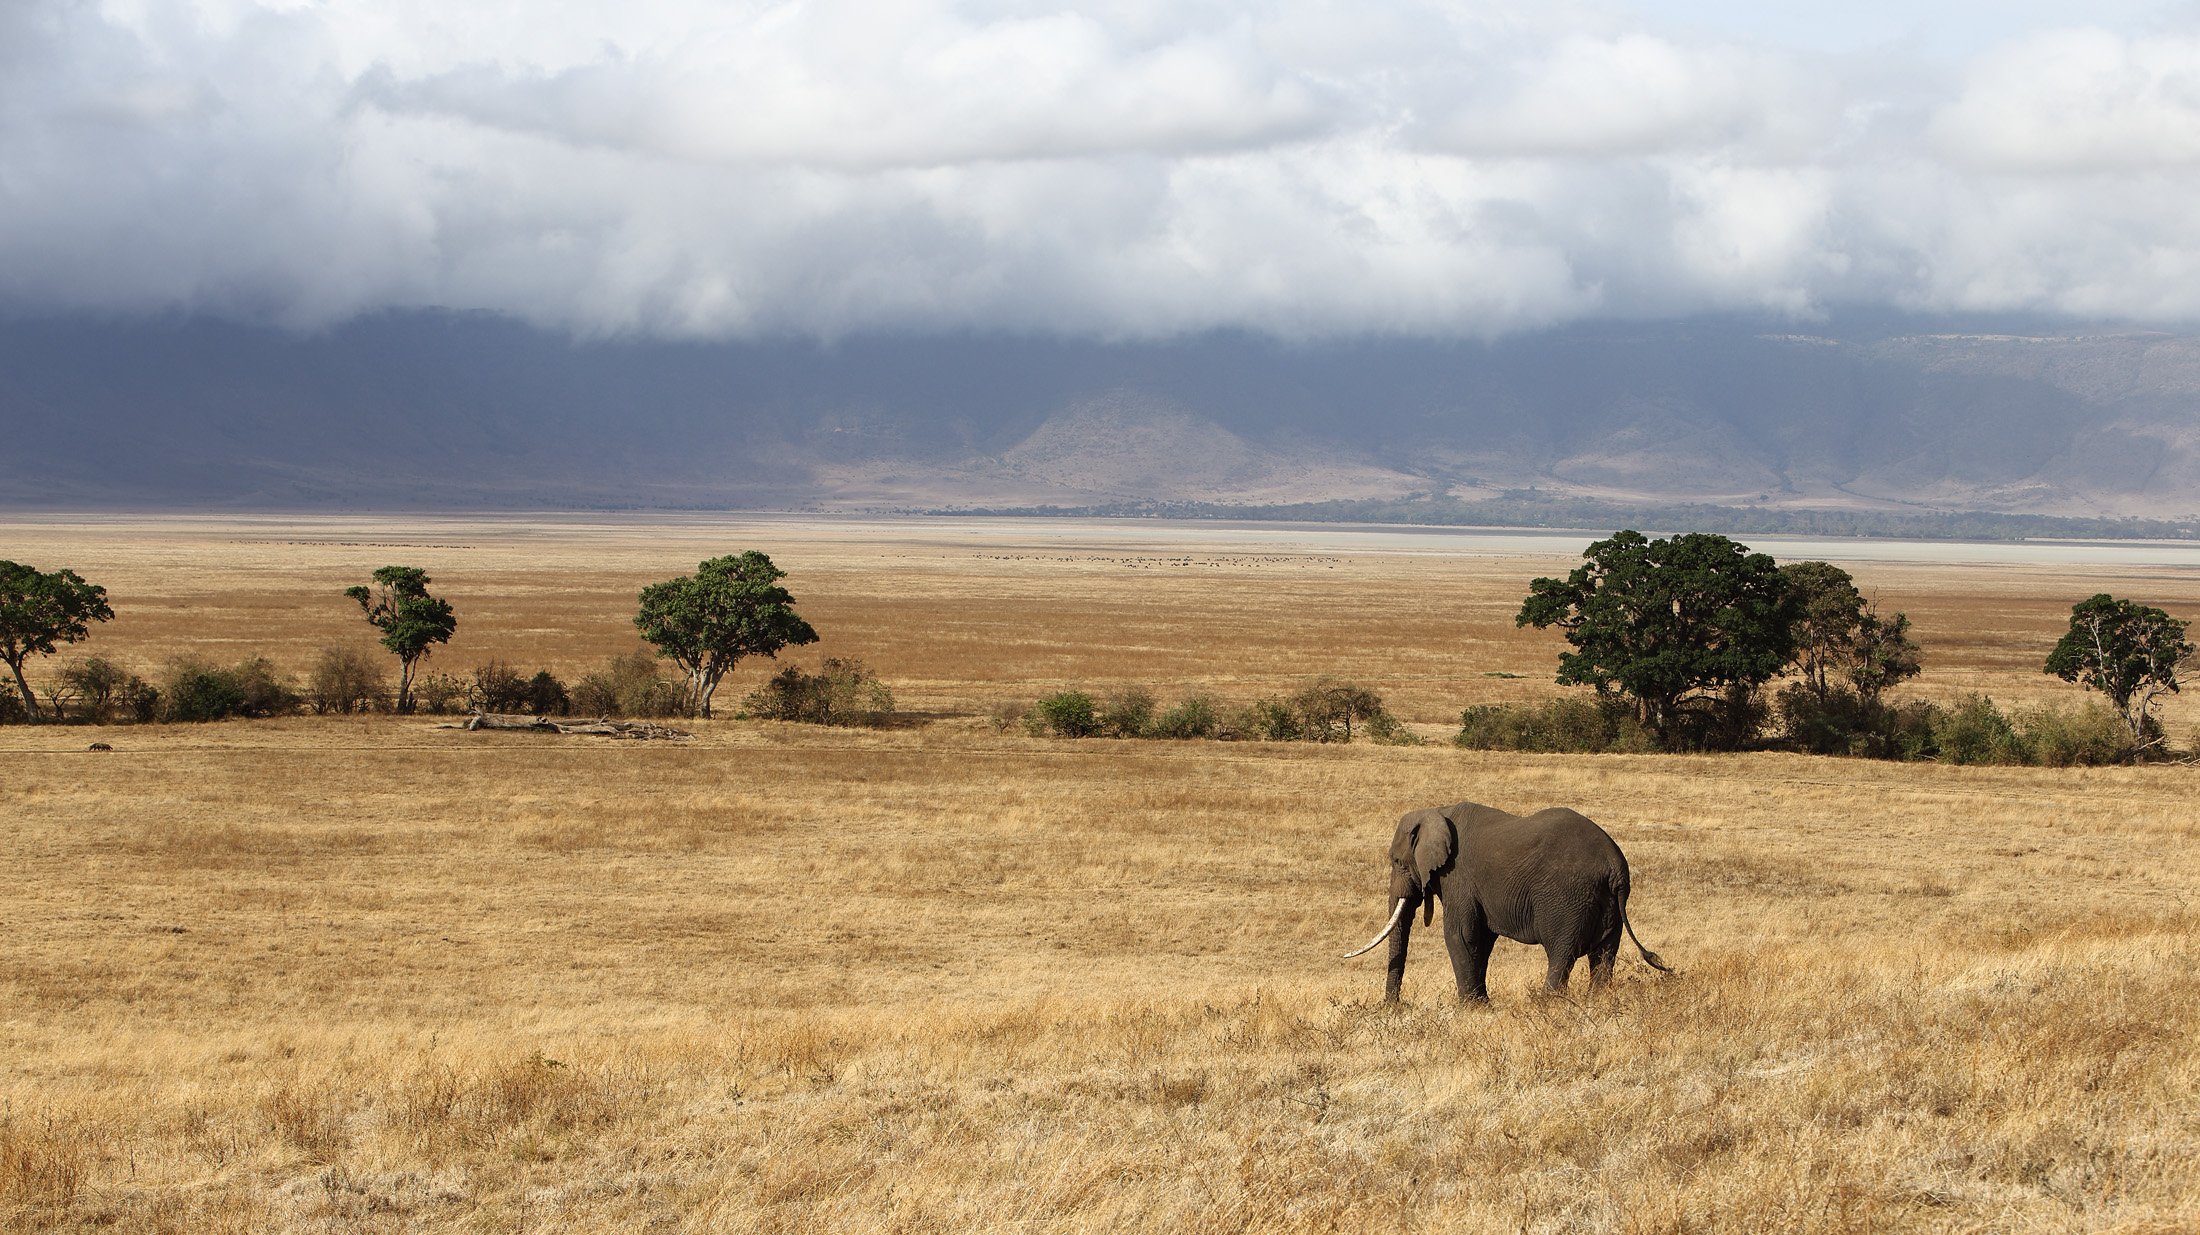 Саванны и редколесья занимают обширные равнины африки. Саванны Танзании. Саванна Конго. Редколесья в Танзании. Нгоронгоро Бизон.